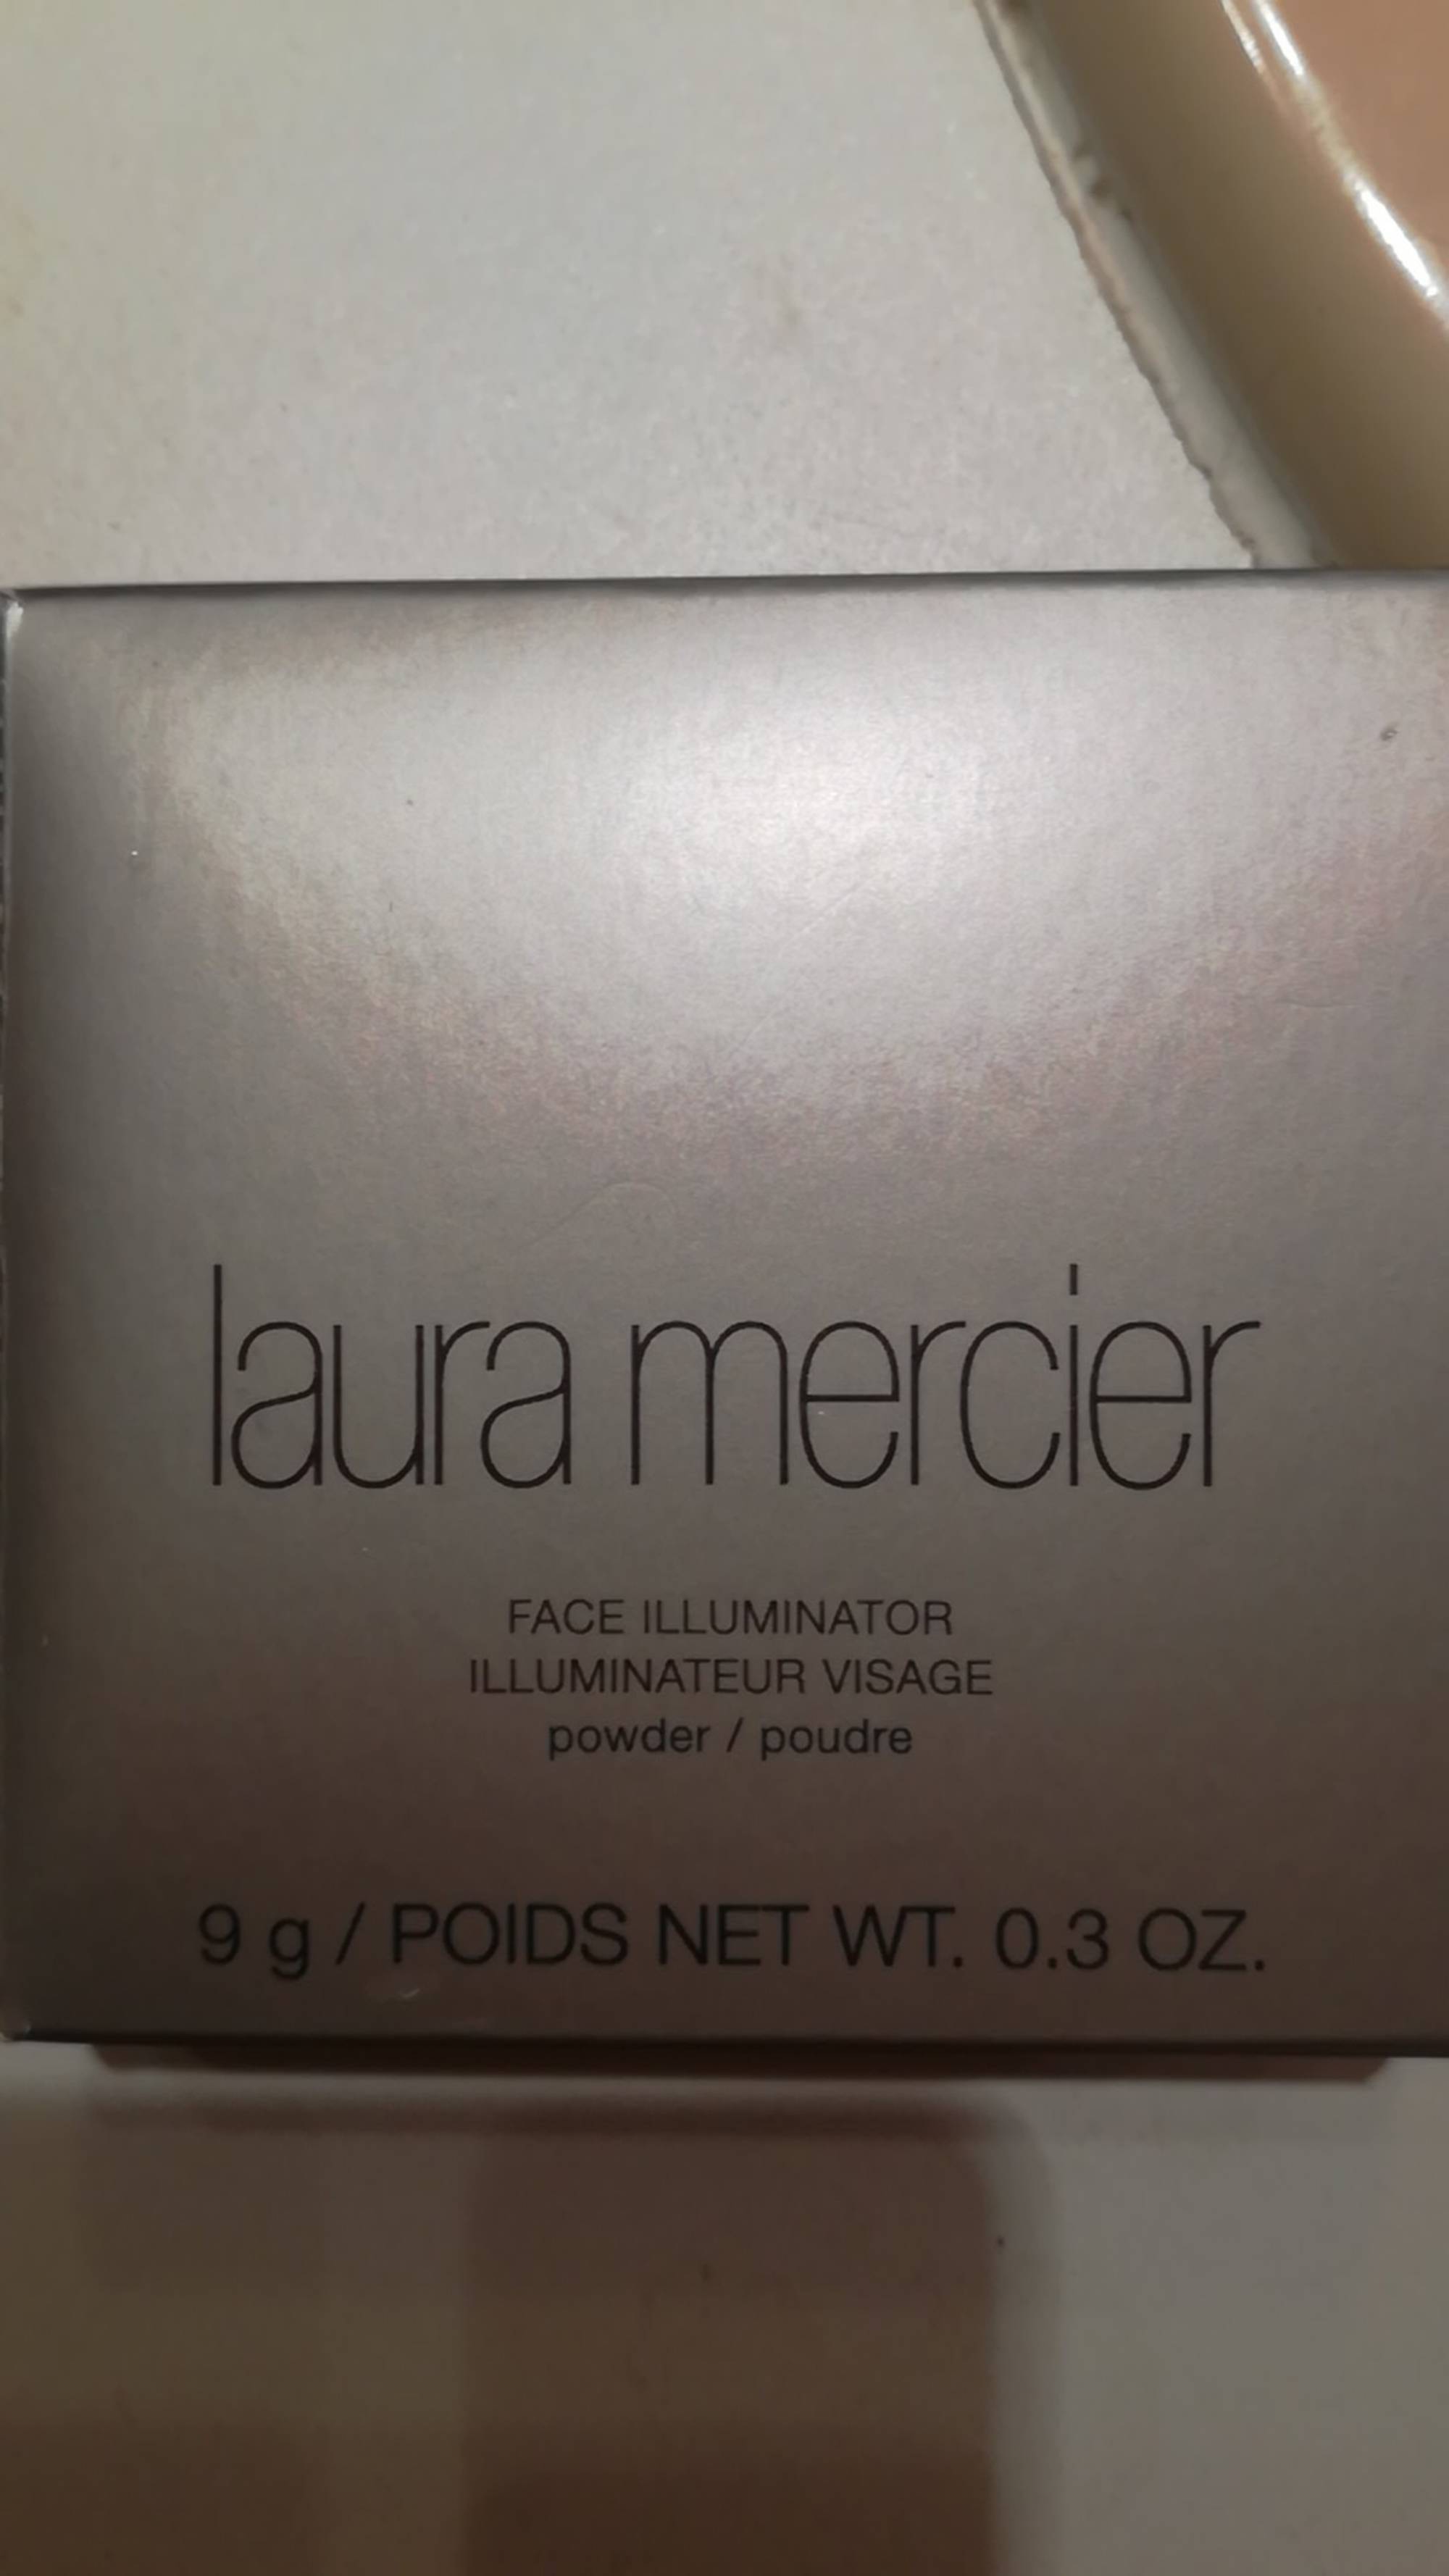 LAURA MERCIER - Poudre illuminateur visage